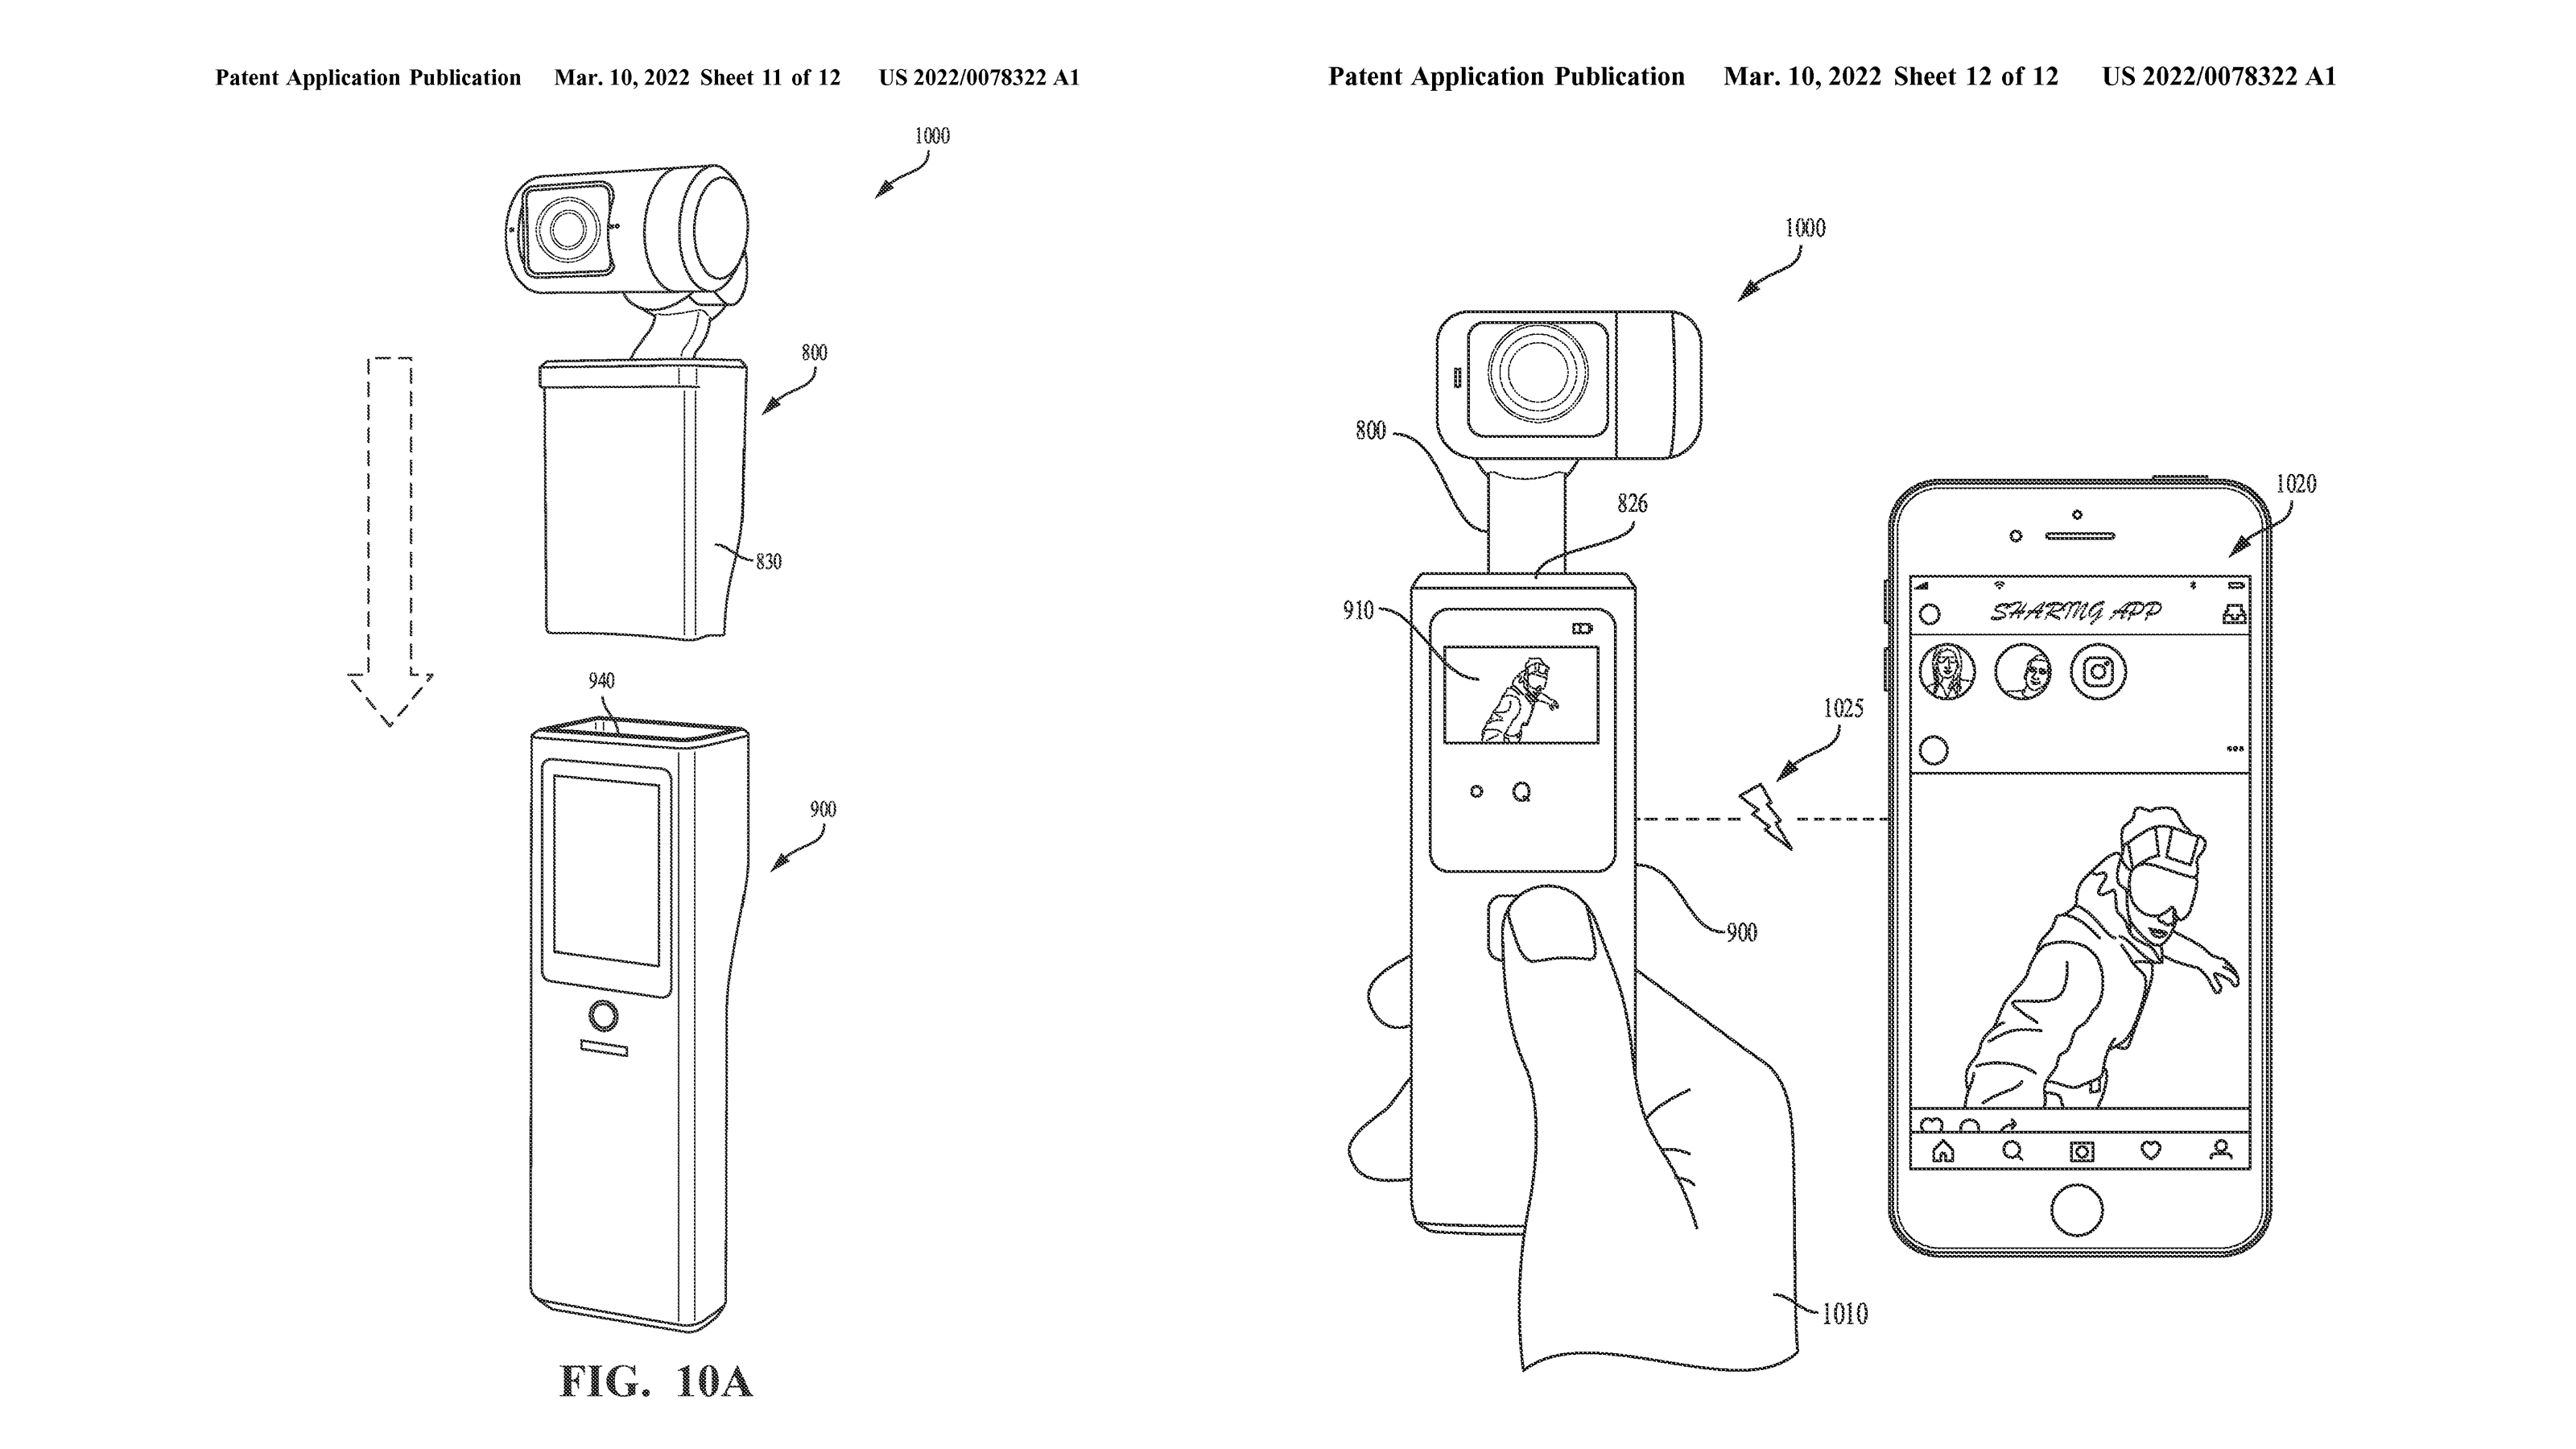 Karten von GoPro Patent